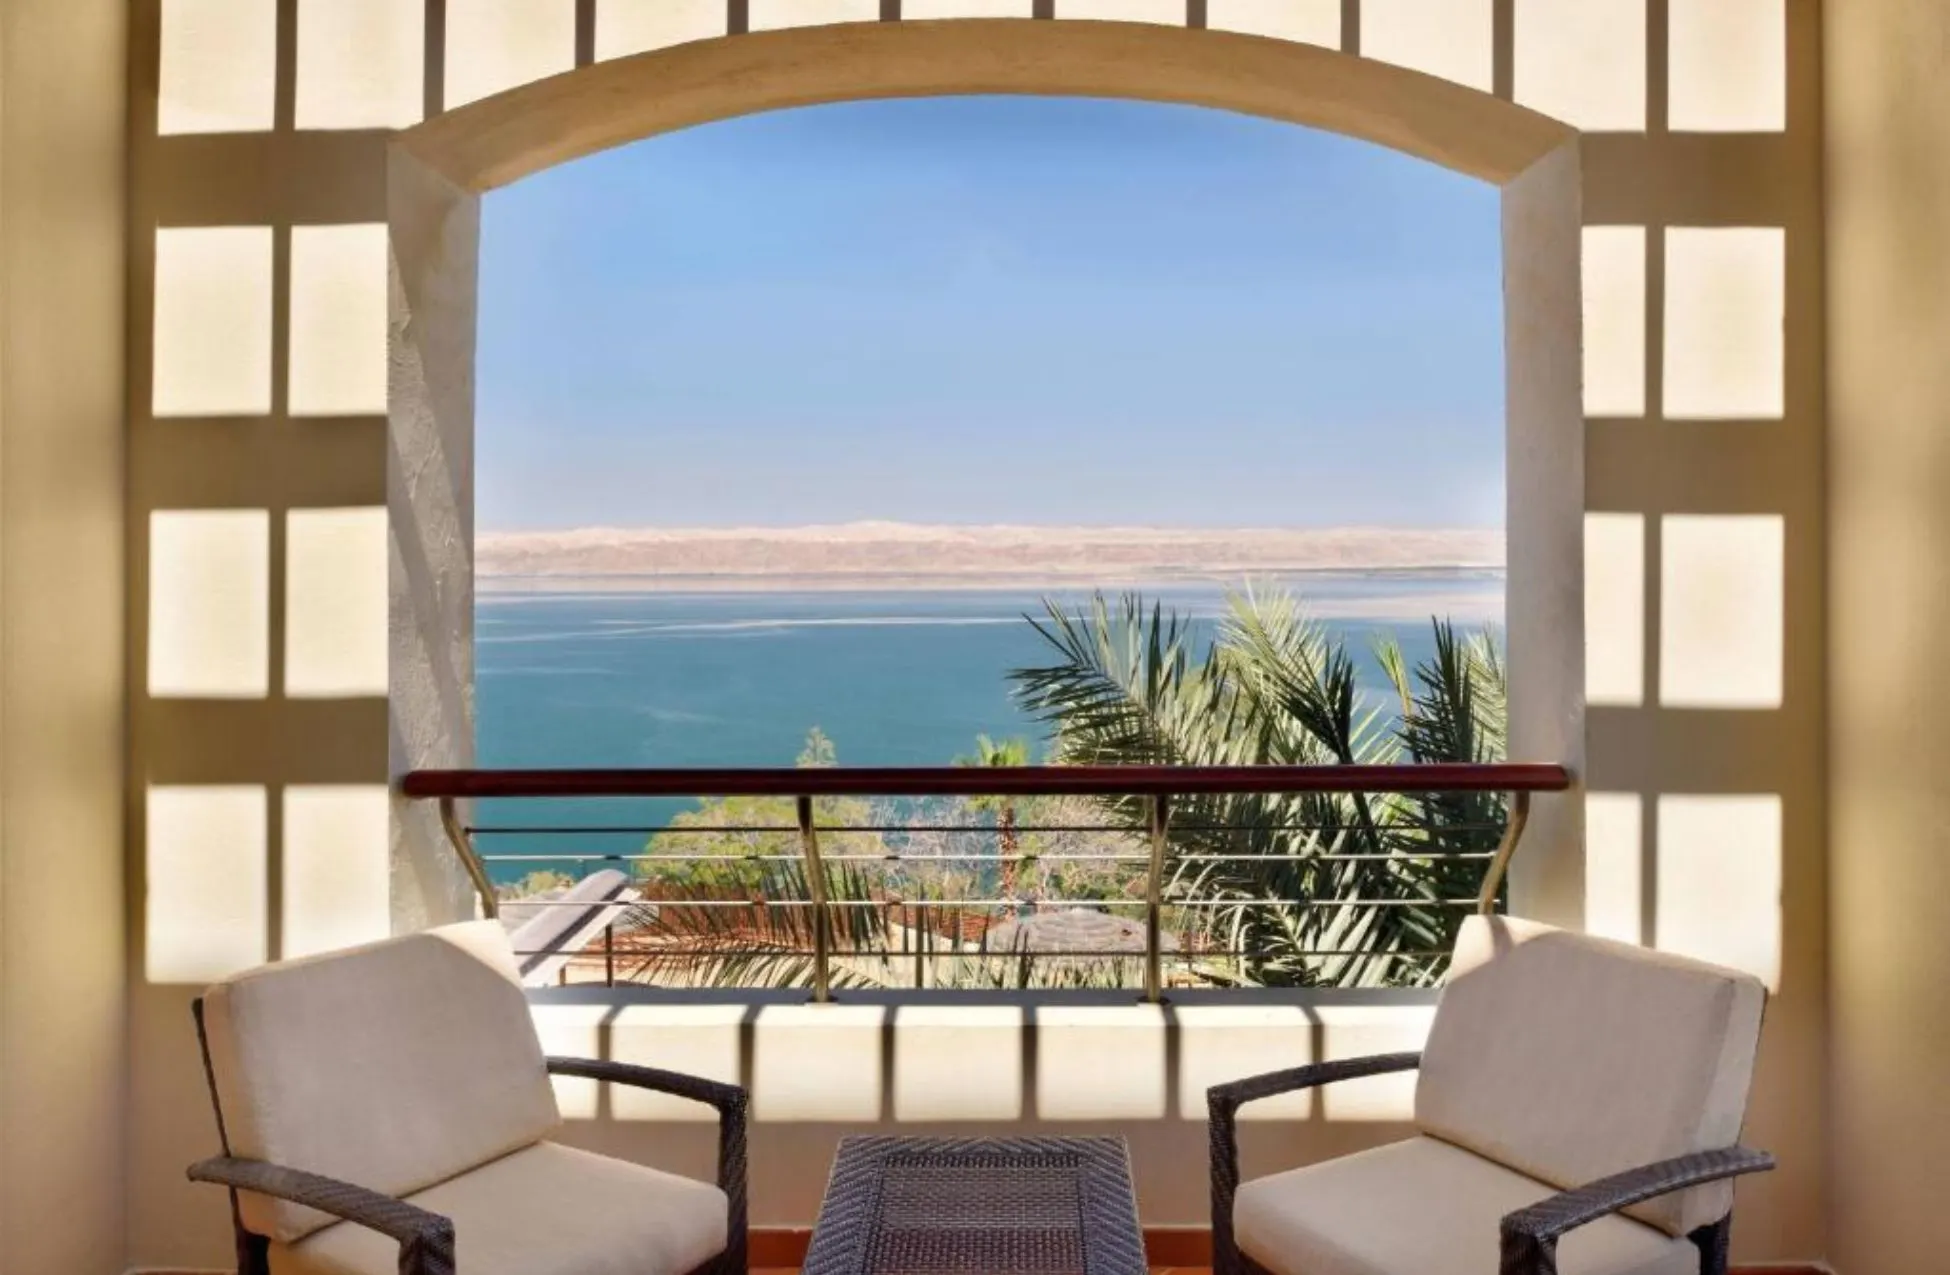 Dead Sea Marriott - Best Hotels In the Dead Sea